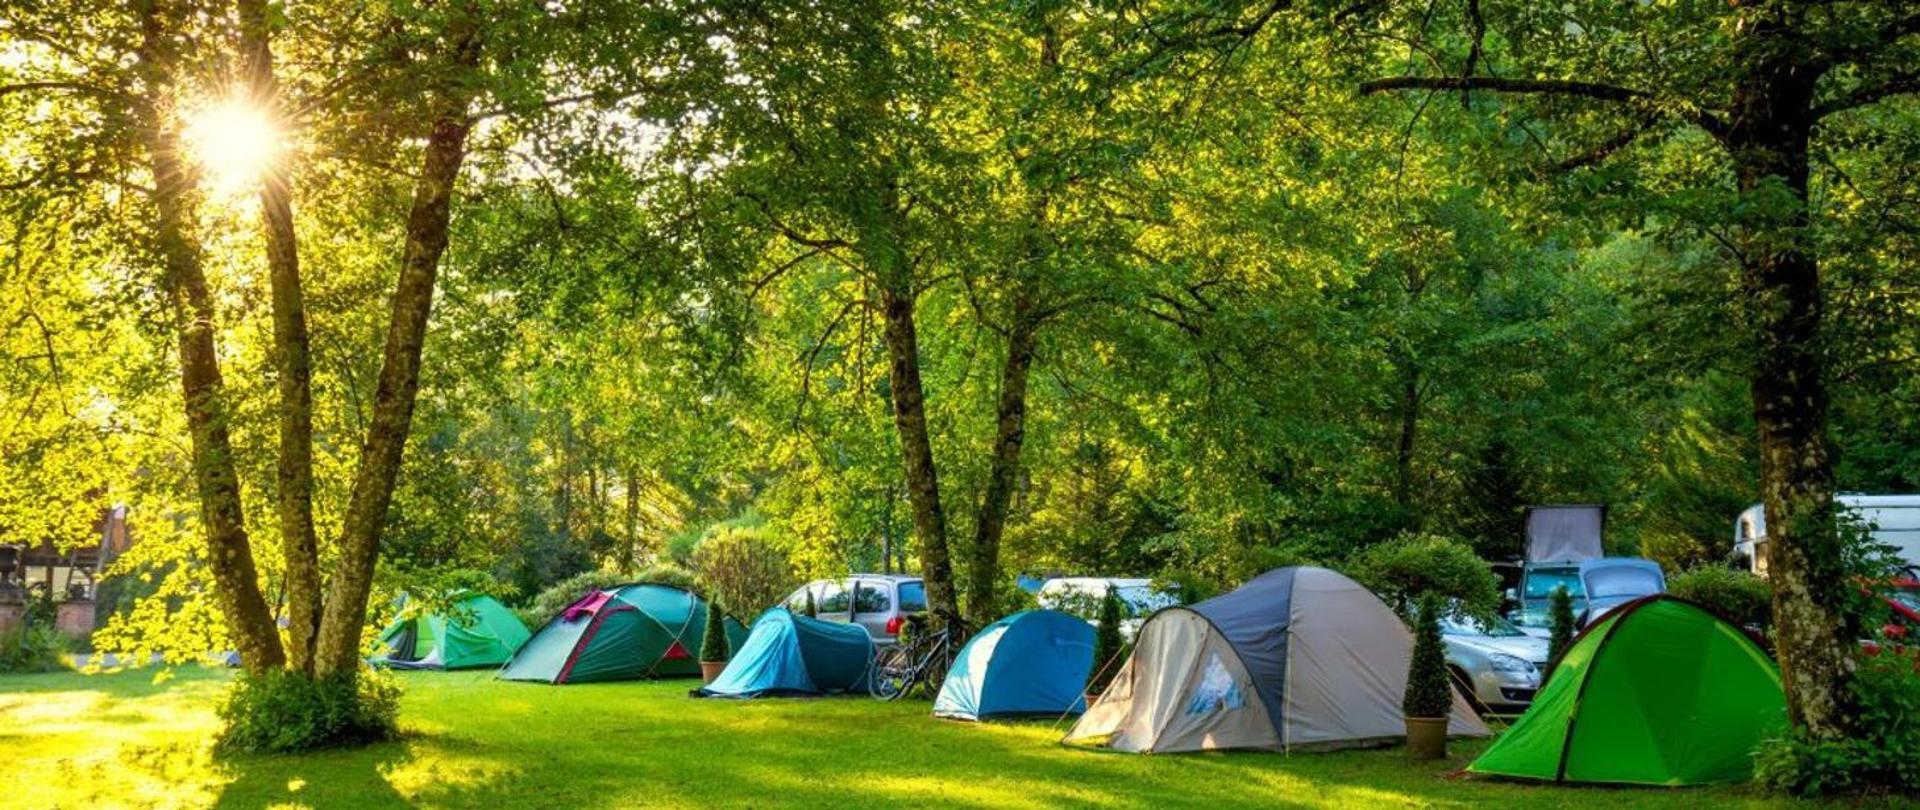 Pole biwakowe- namioty rozstawione wśród drzew